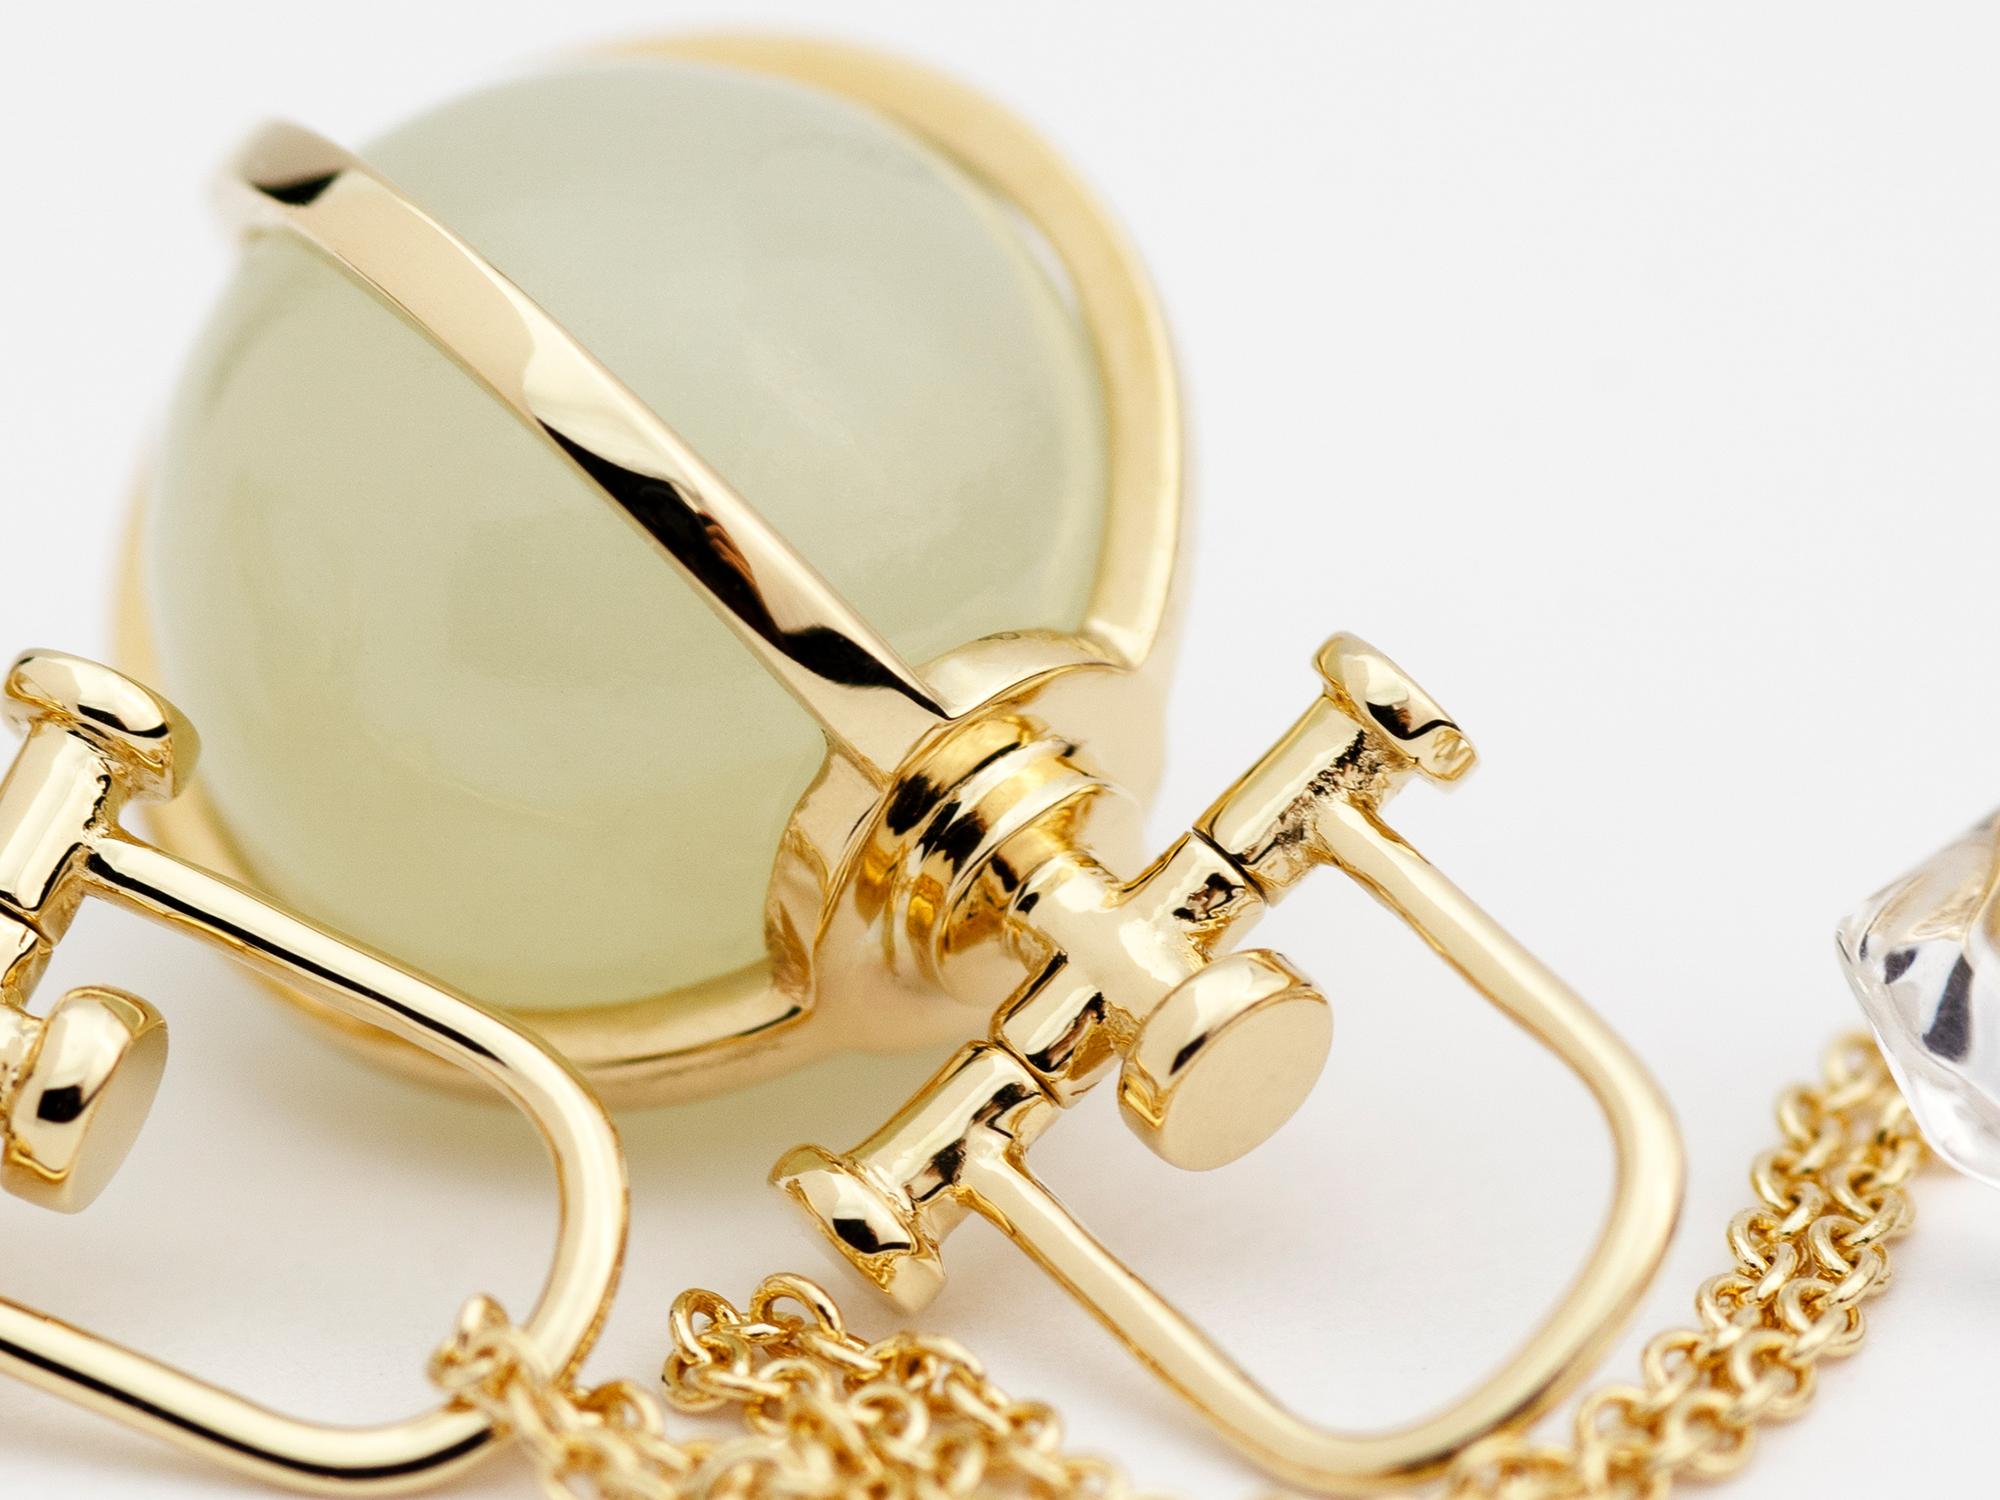 Rebecca Li crée des bijoux sacrés et de pleine conscience. 
Ce collier orbe minimaliste en néphrite et jade blanc fait partie de sa collection Crystal Orb. Le principal élément de conception utilisé est le cercle de la géométrie sacrée. Il